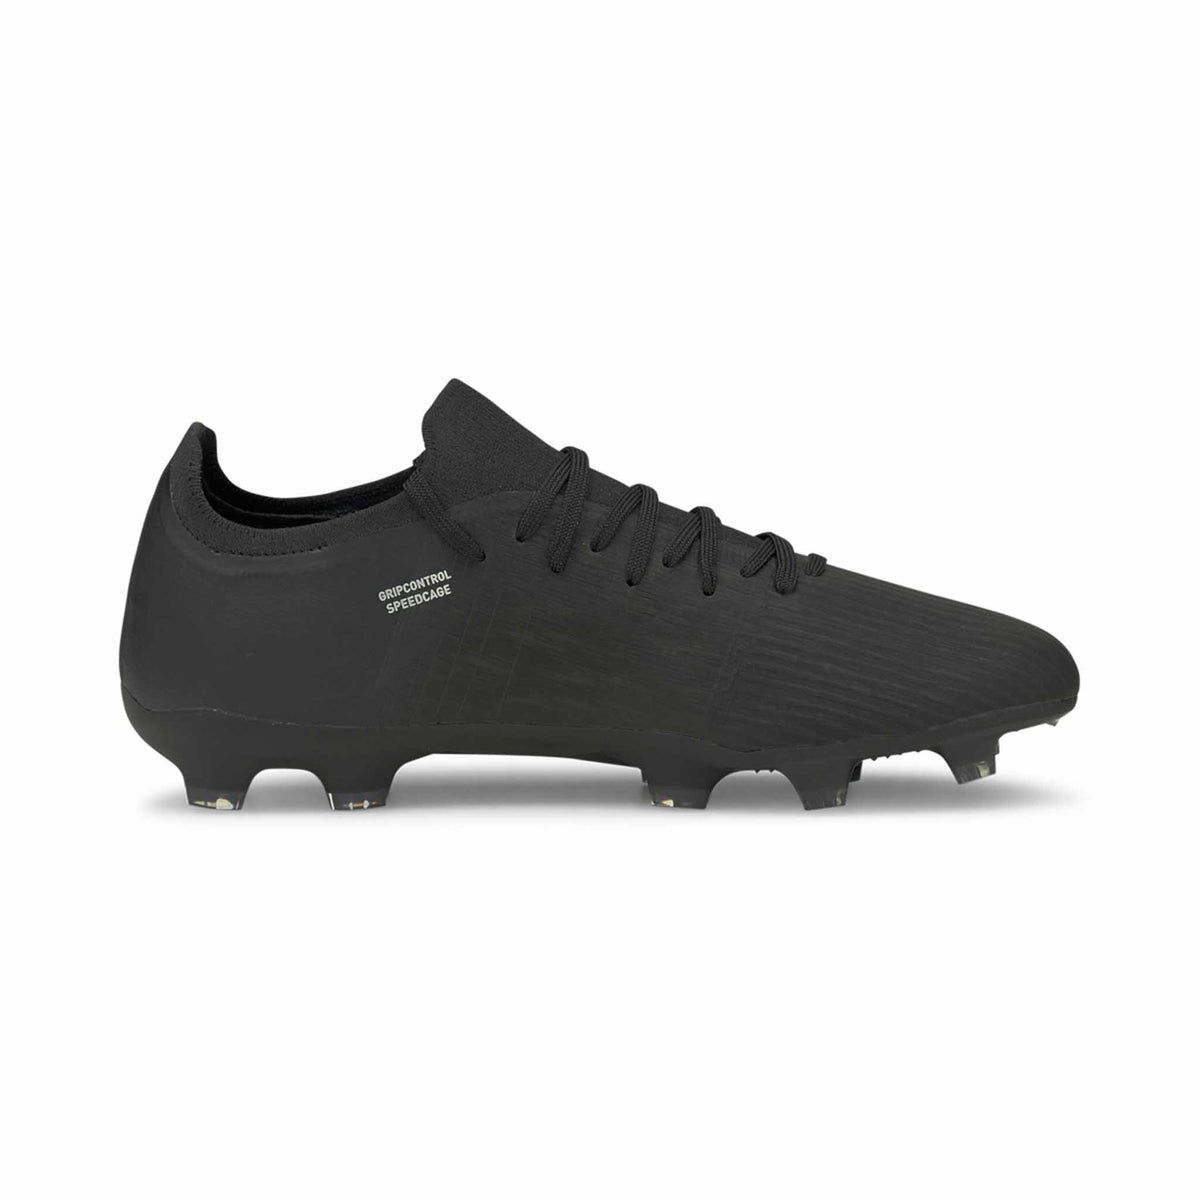 Puma Ultra 3.3 FG/AG chaussures de soccer pour adulte - Puma Black / Silver Asphalt - Côté